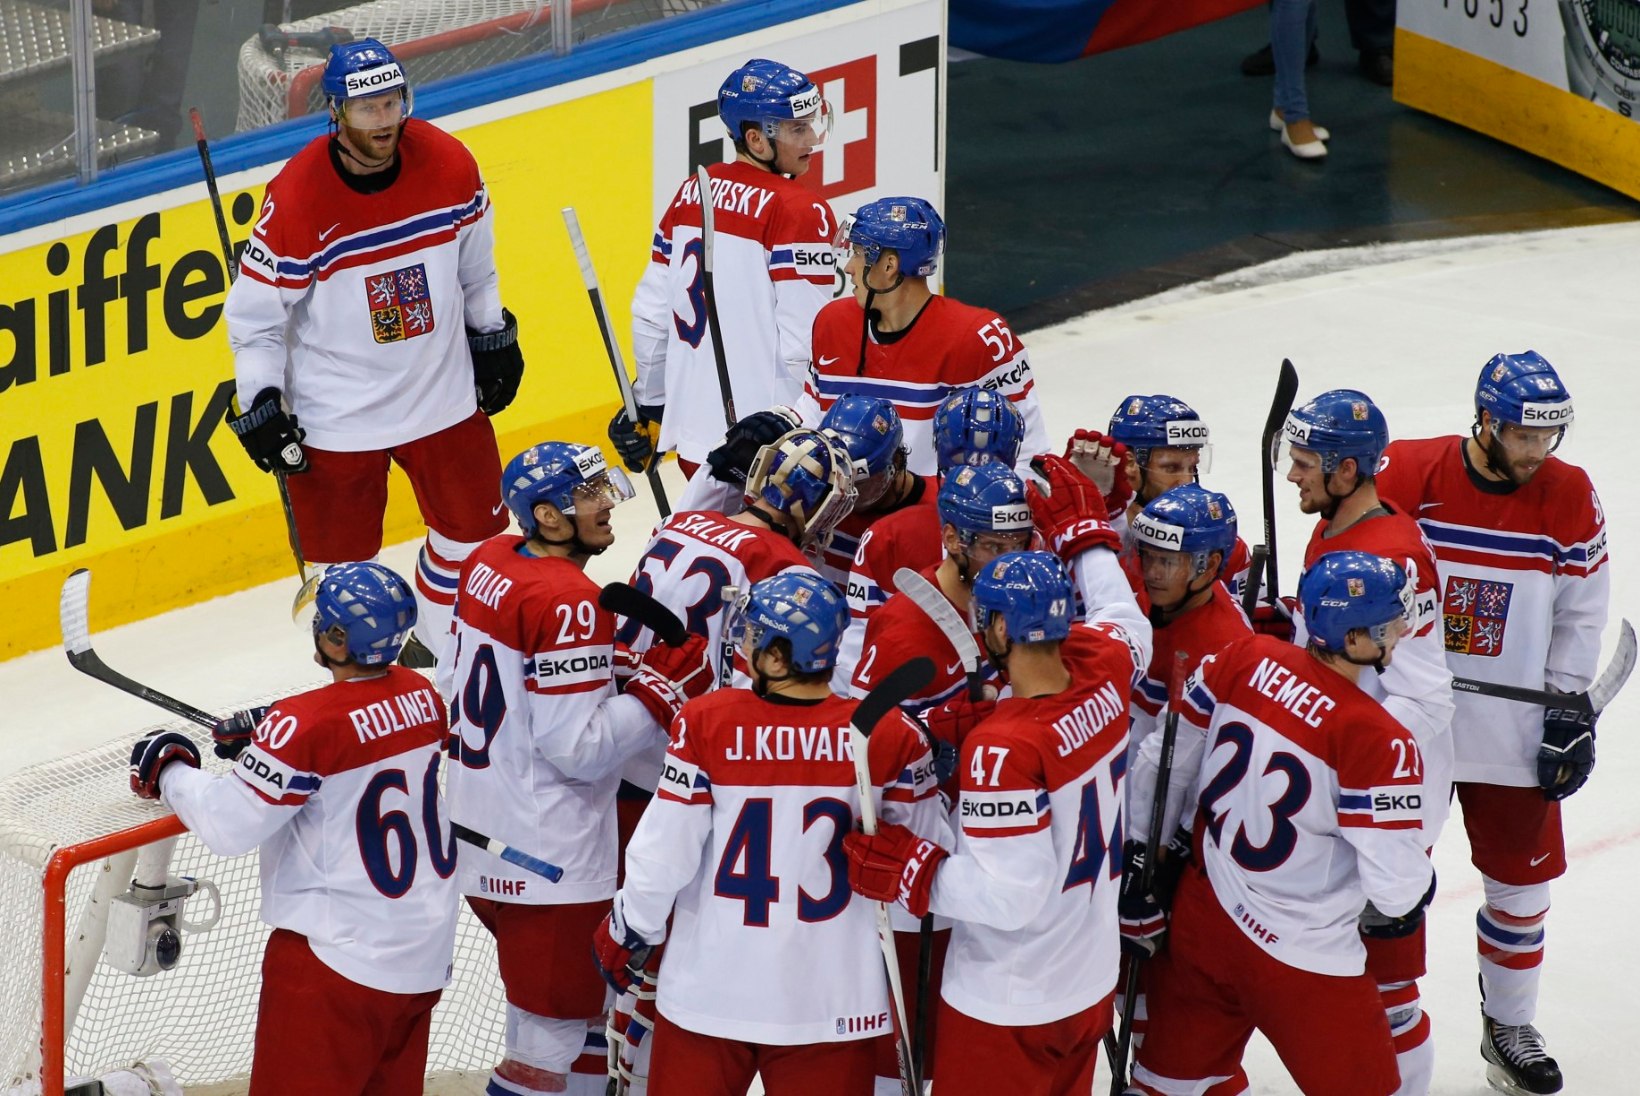 FOTOD: Tšehhi alistas põnevusmängus USA, venelastel polnud probleeme Prantsusmaaga